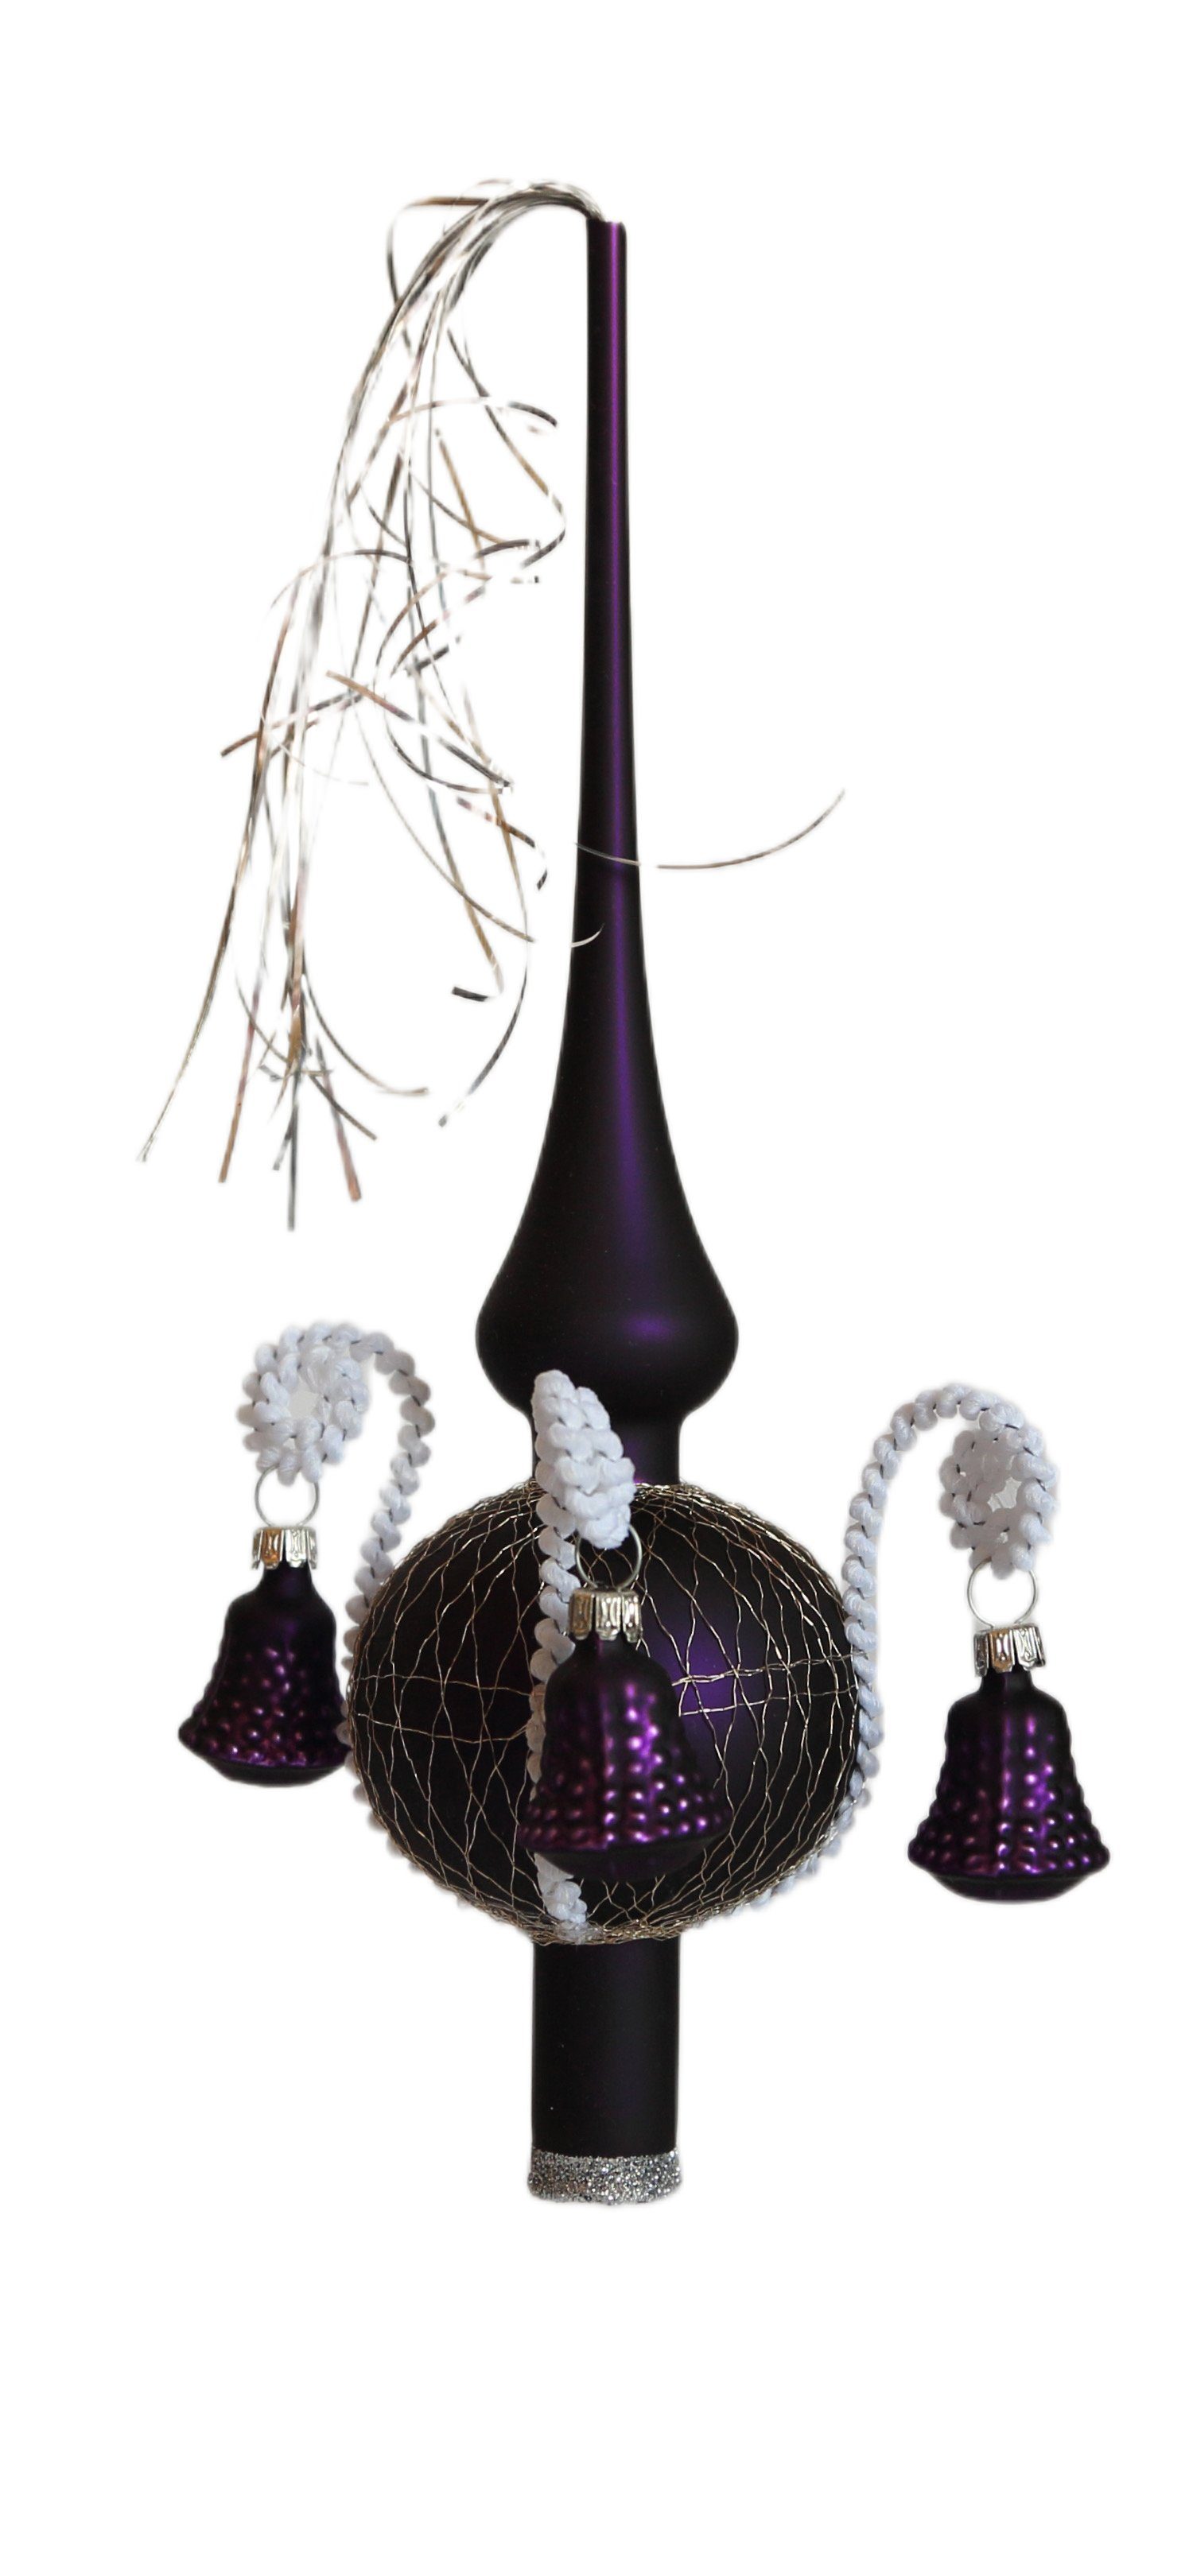 Lauschaer Glas Christbaumspitze Weihnachtsbaumspitze mit Formglöckchen, umsponnen mit Leonischem Draht, mundgeblasen, handdekoriert, handbemalt, in Lauscha hergestellt lila matt